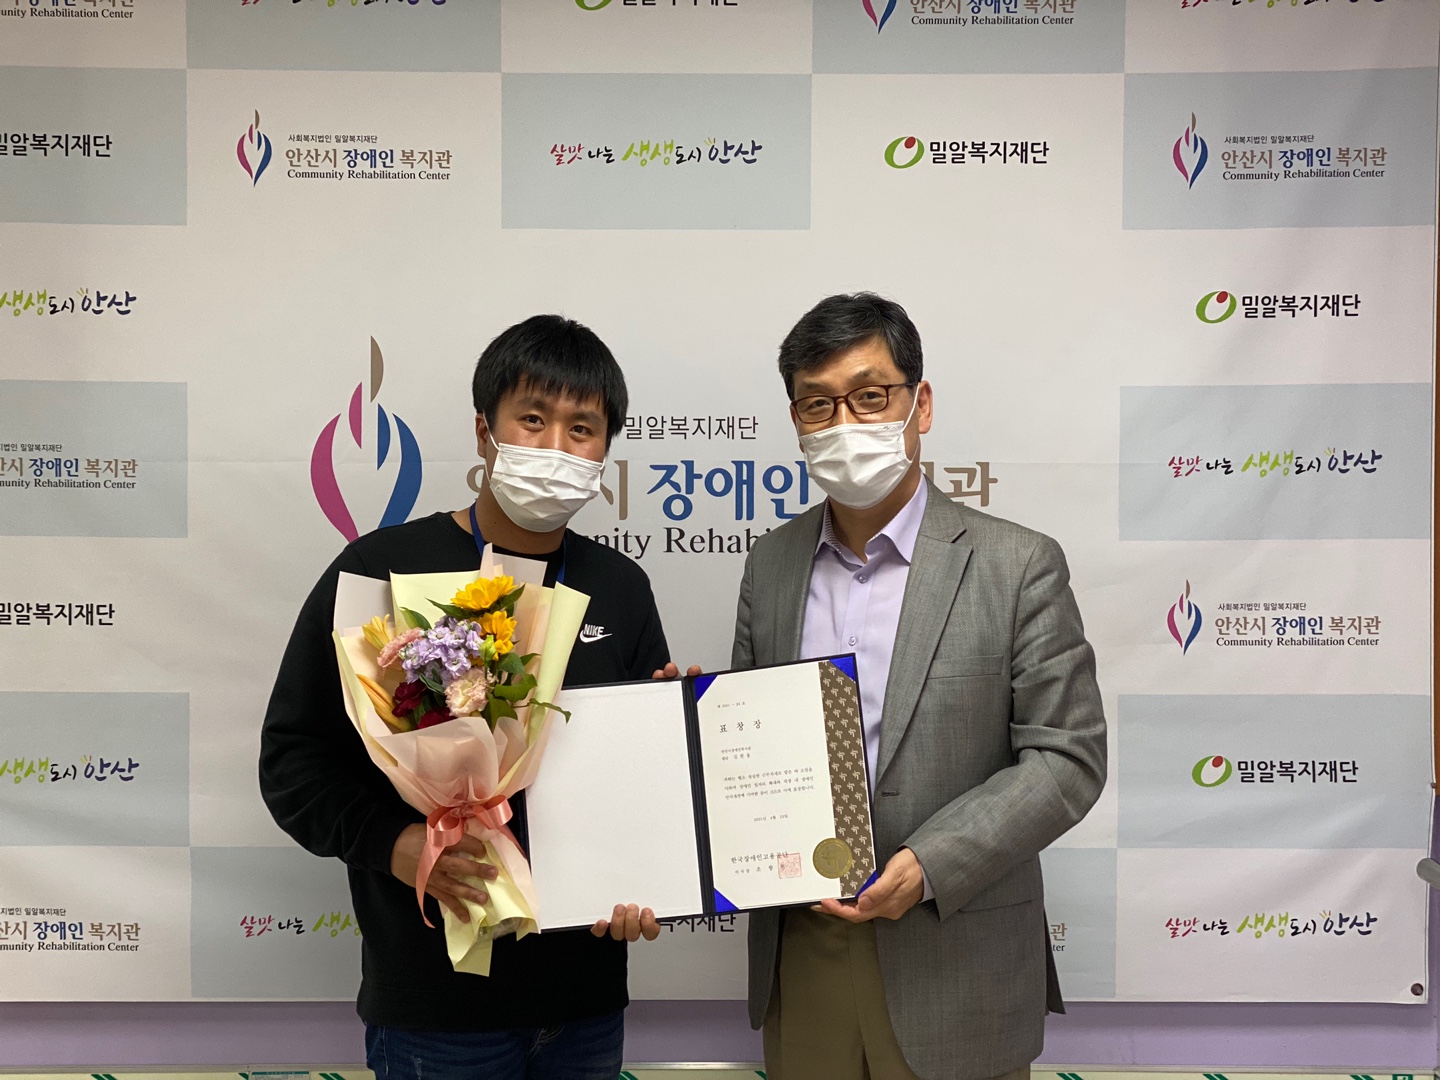 표창장을 수상한 김한울대리님이 박상호관장님과 함께 찍은 사진